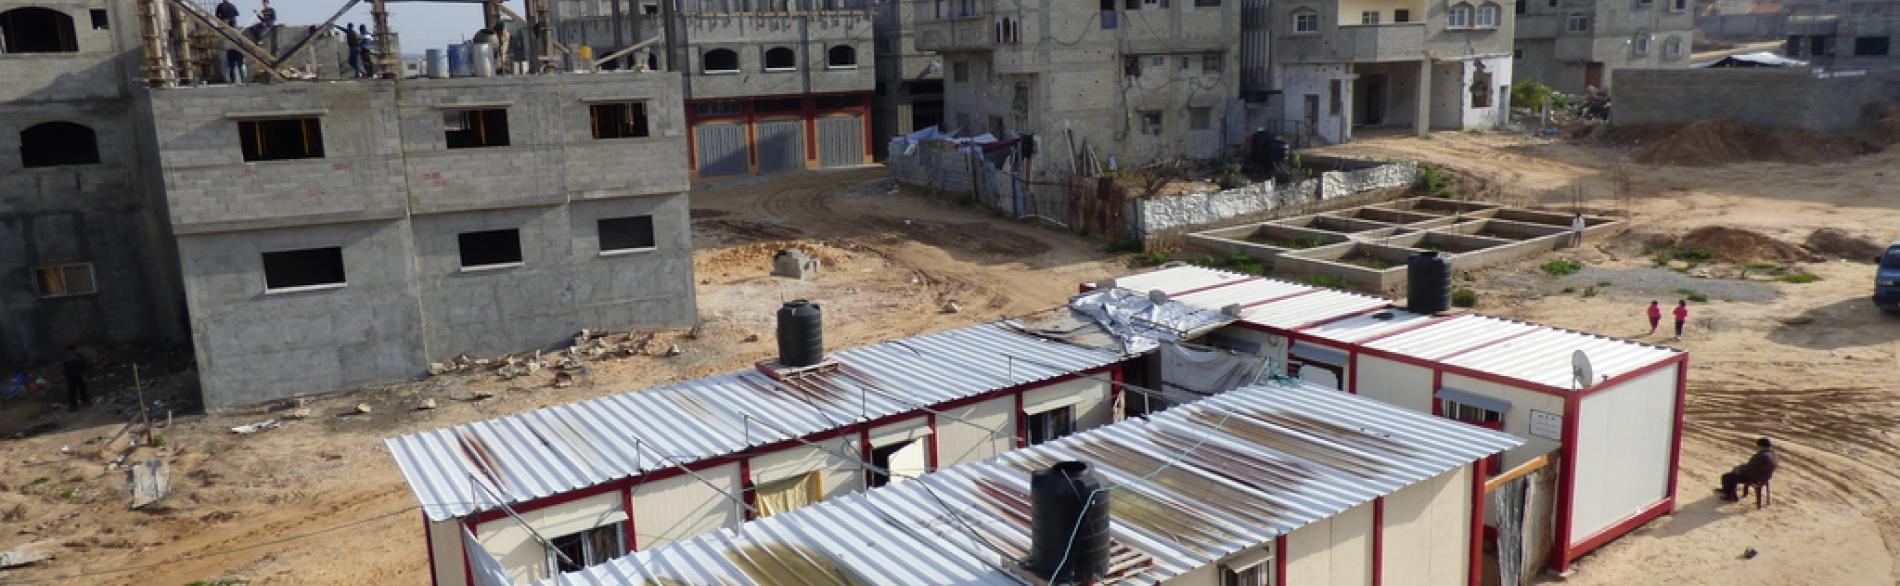 קרוואנים שניתנו למשפחות שנעקרו ומבנים בשיקום בשכונת א־שג׳עייה בעיר עזה, ינואר 2016 / © צילום – משרד האו״ם לתיאום עניינים הומניטריים